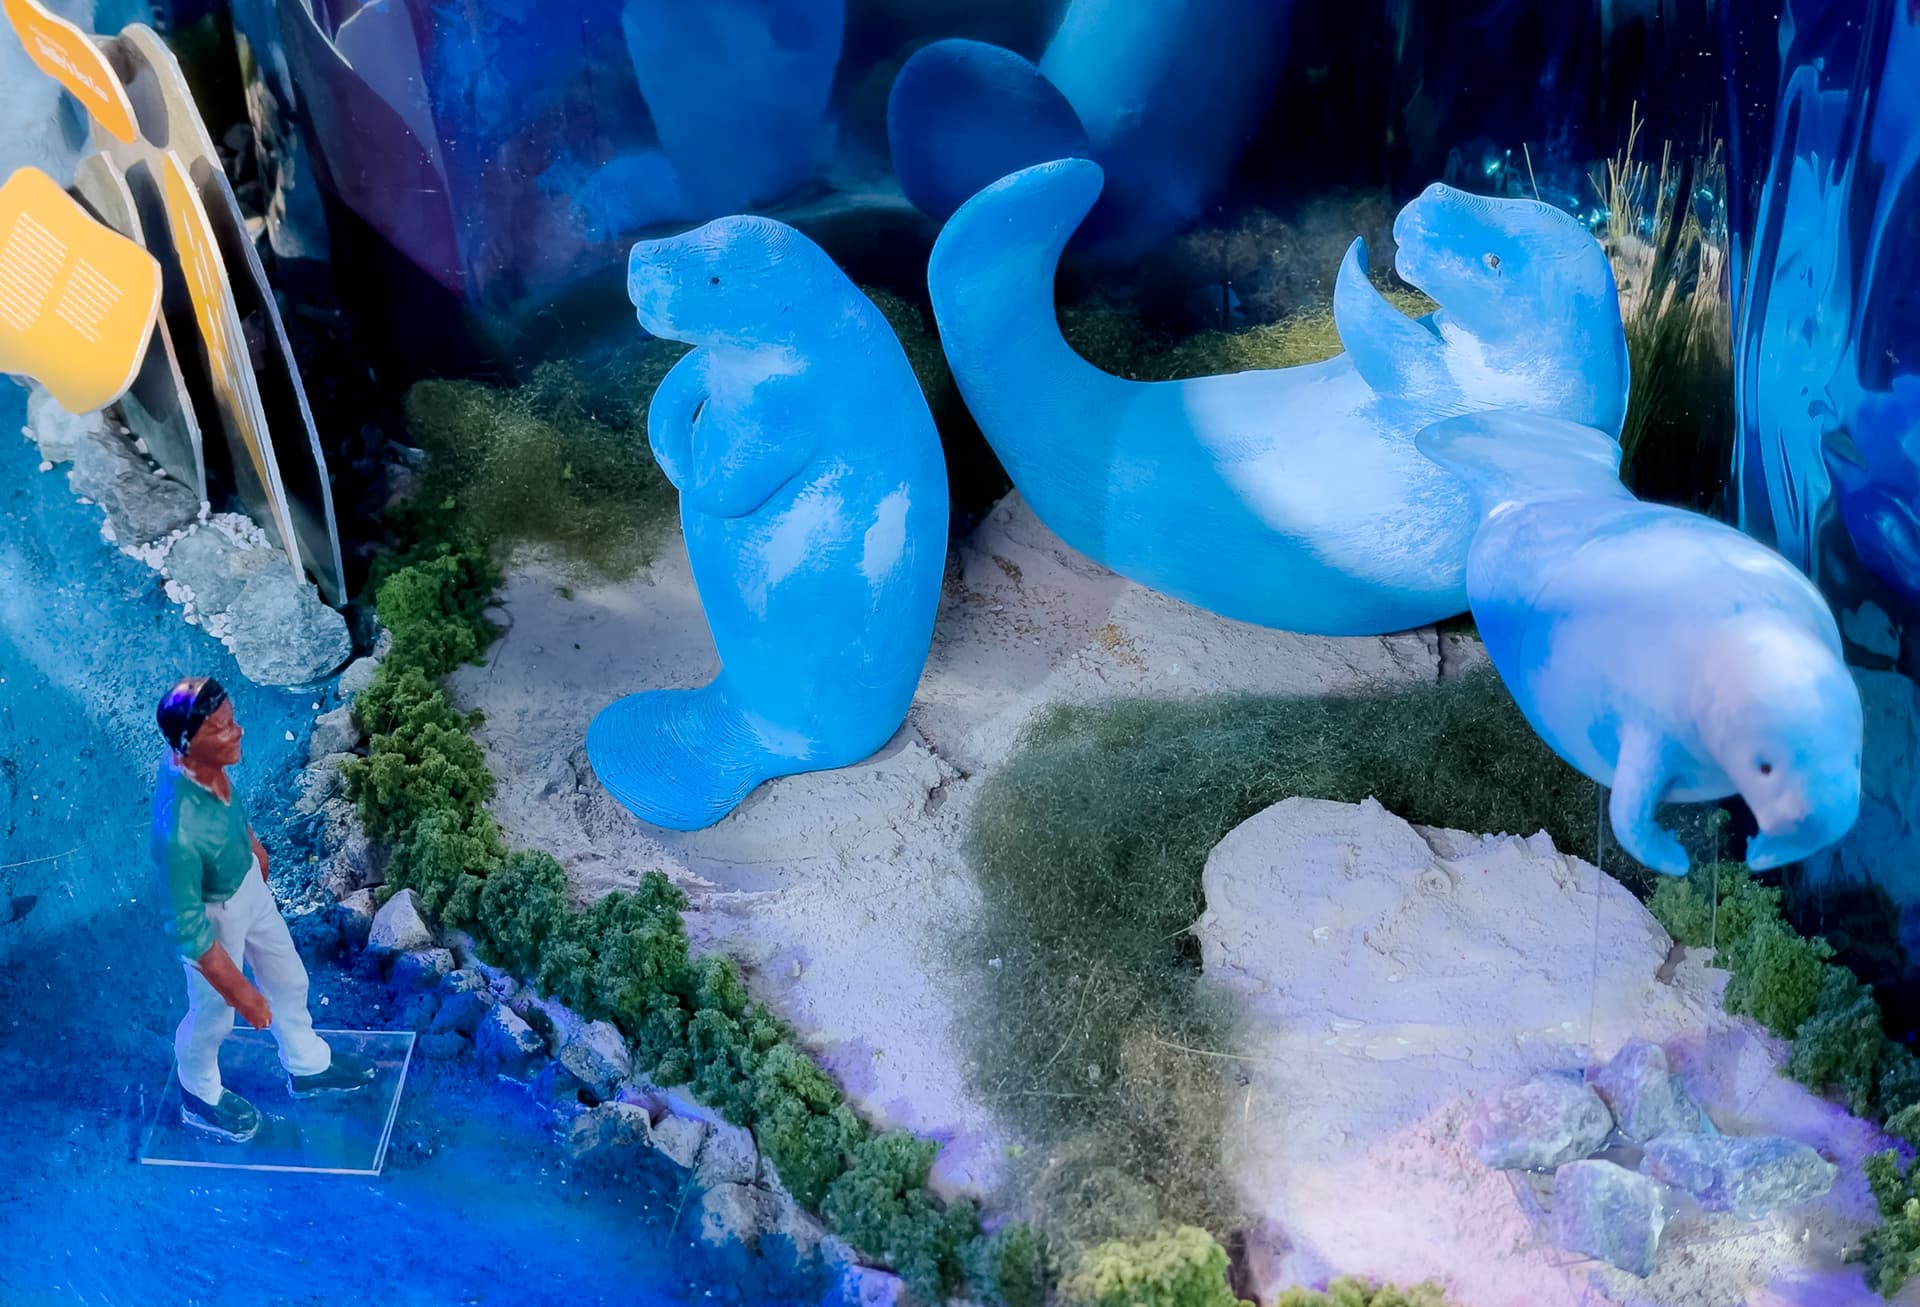 Zone 1 - dugong sculptures